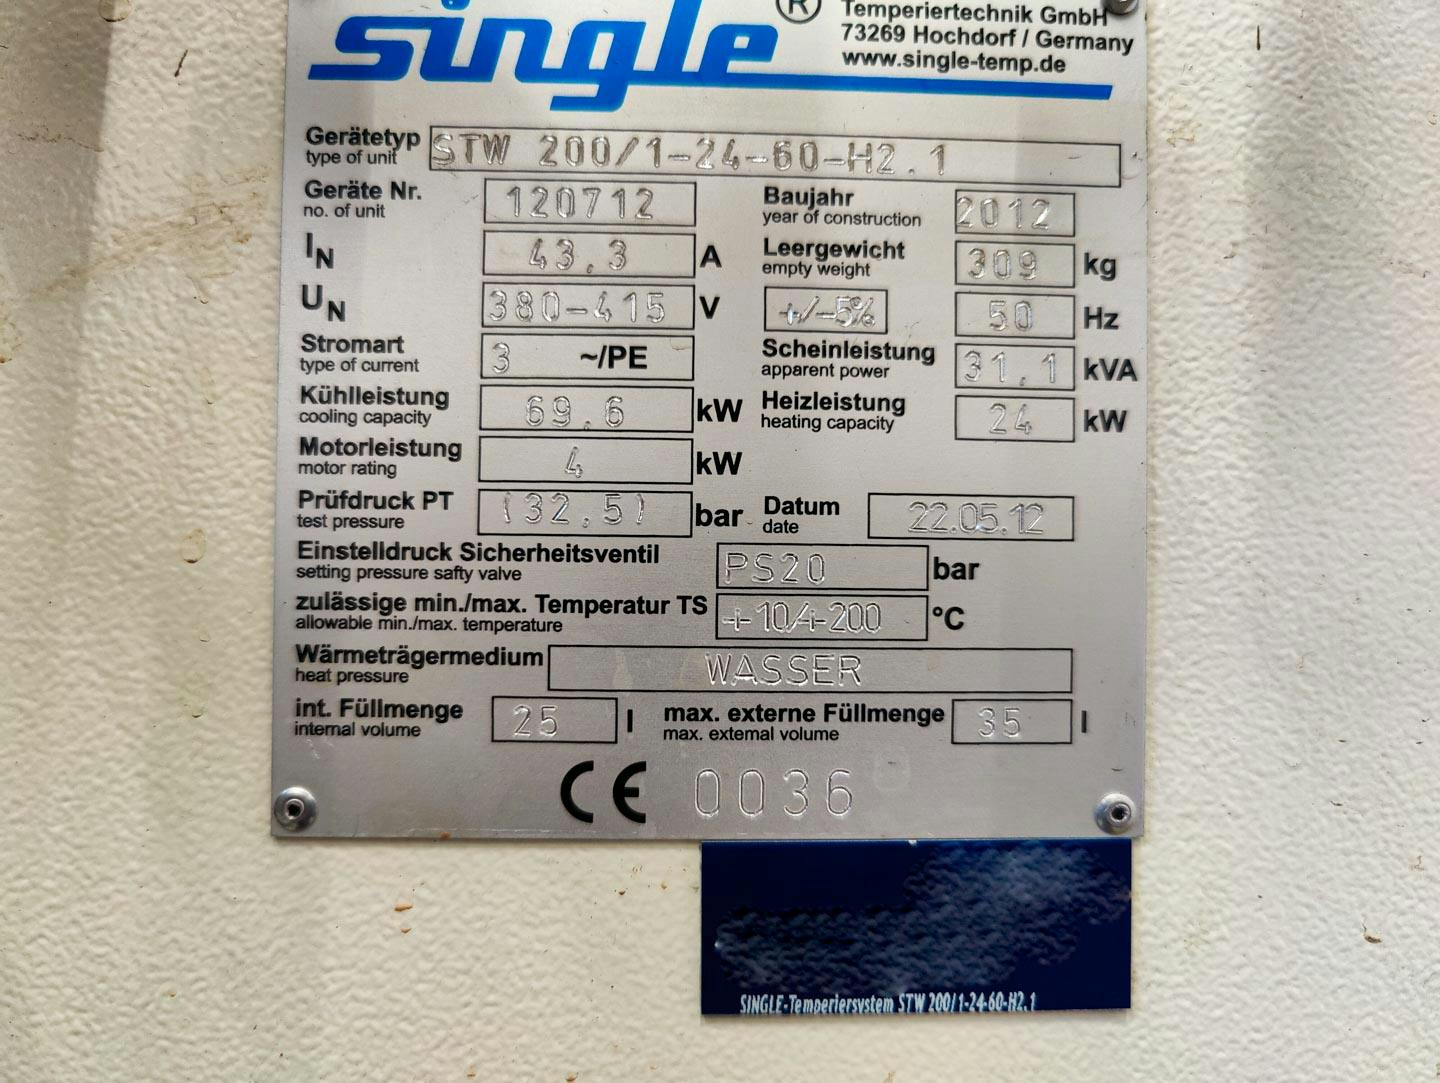 Single Temperiertechnik STW 200/1-24.60-H2.1 - Temperature control unit - image 7